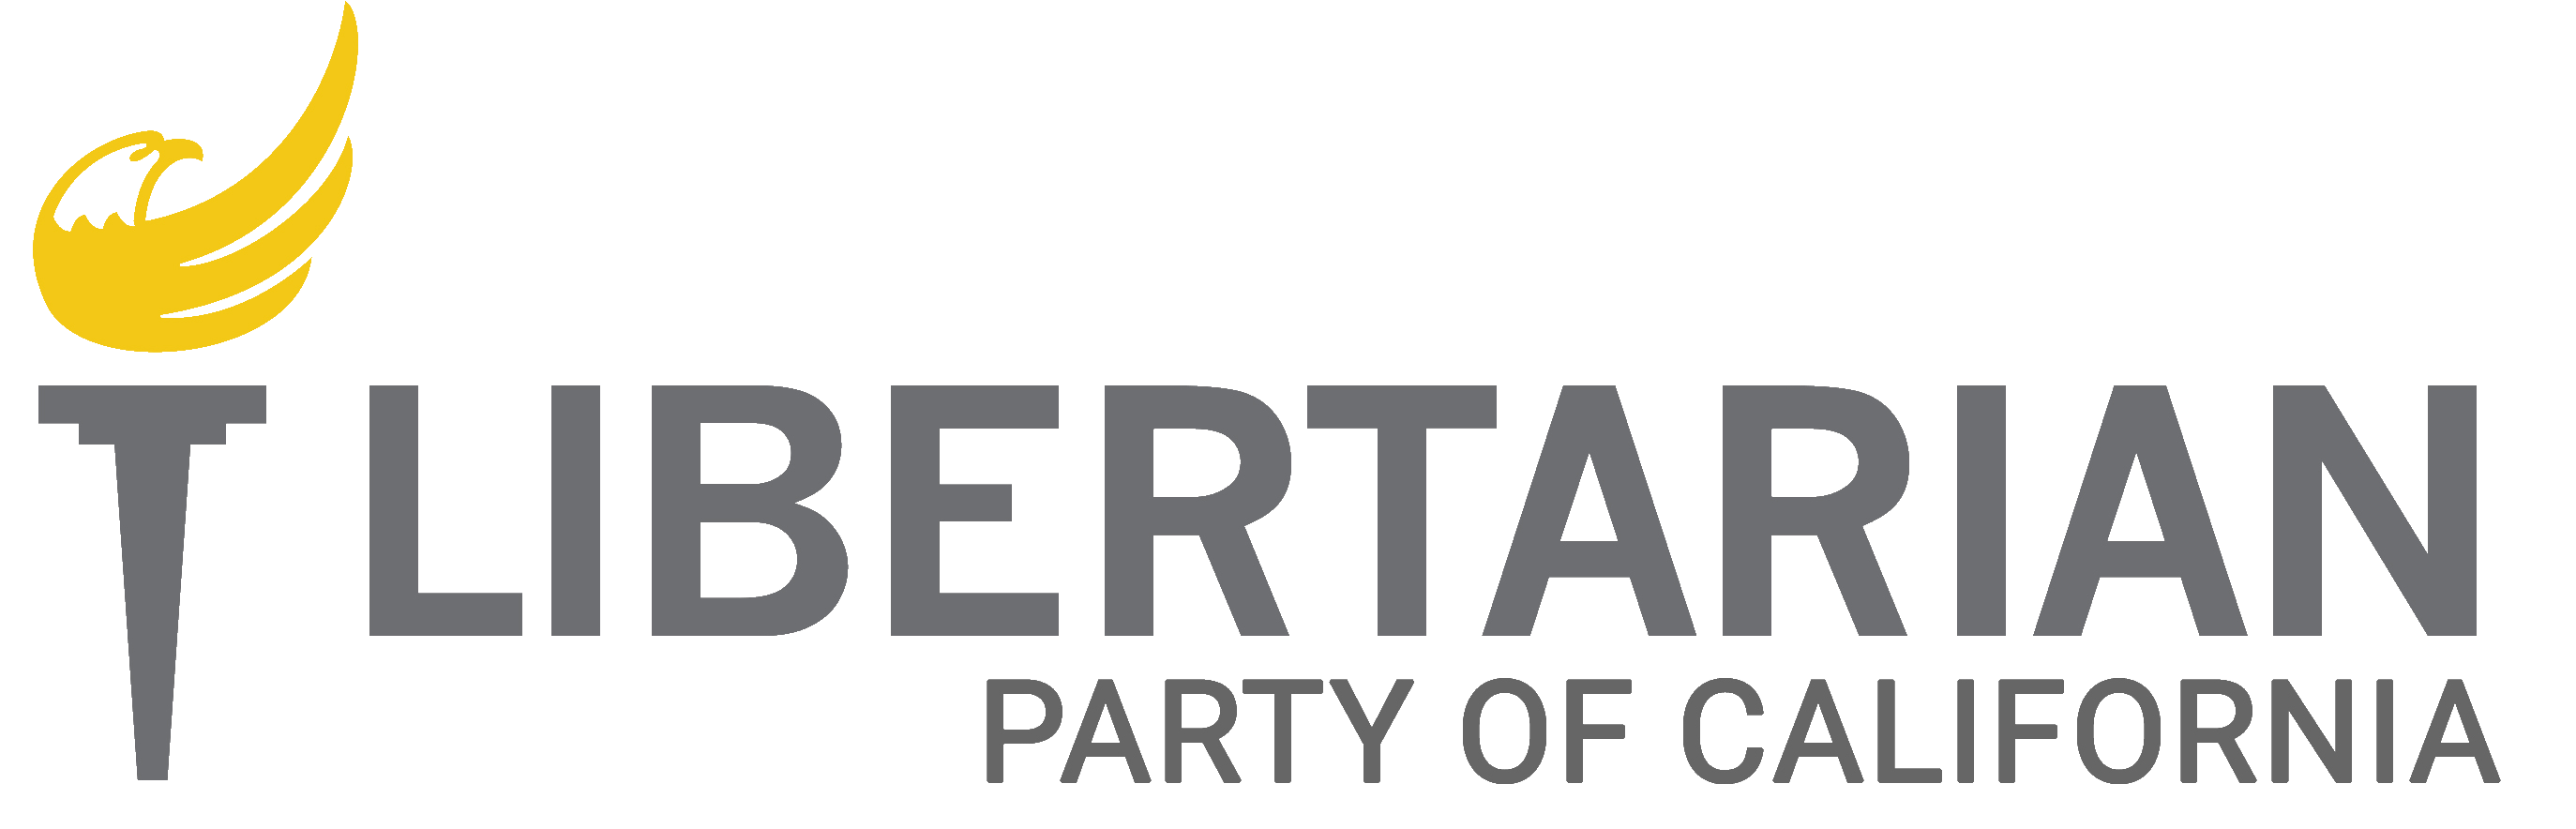 Contact Libertarian Party of California